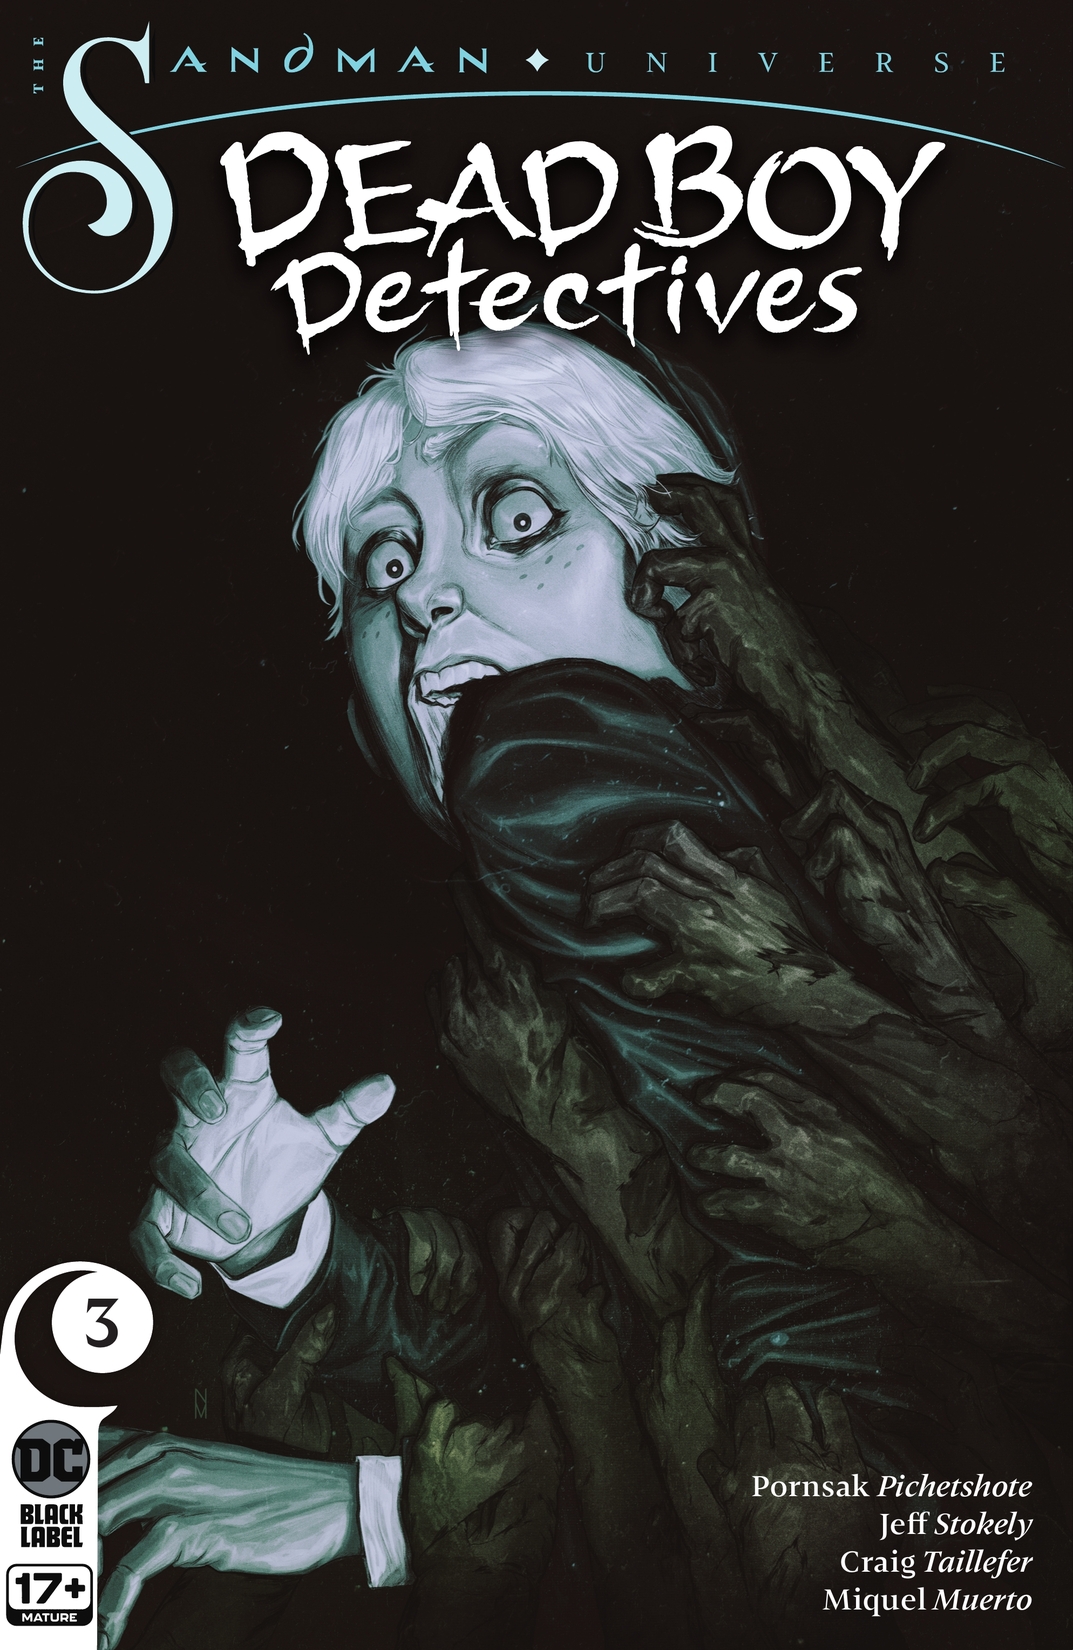 The Sandman Universe: Dead Boy Detectives #3 preview images